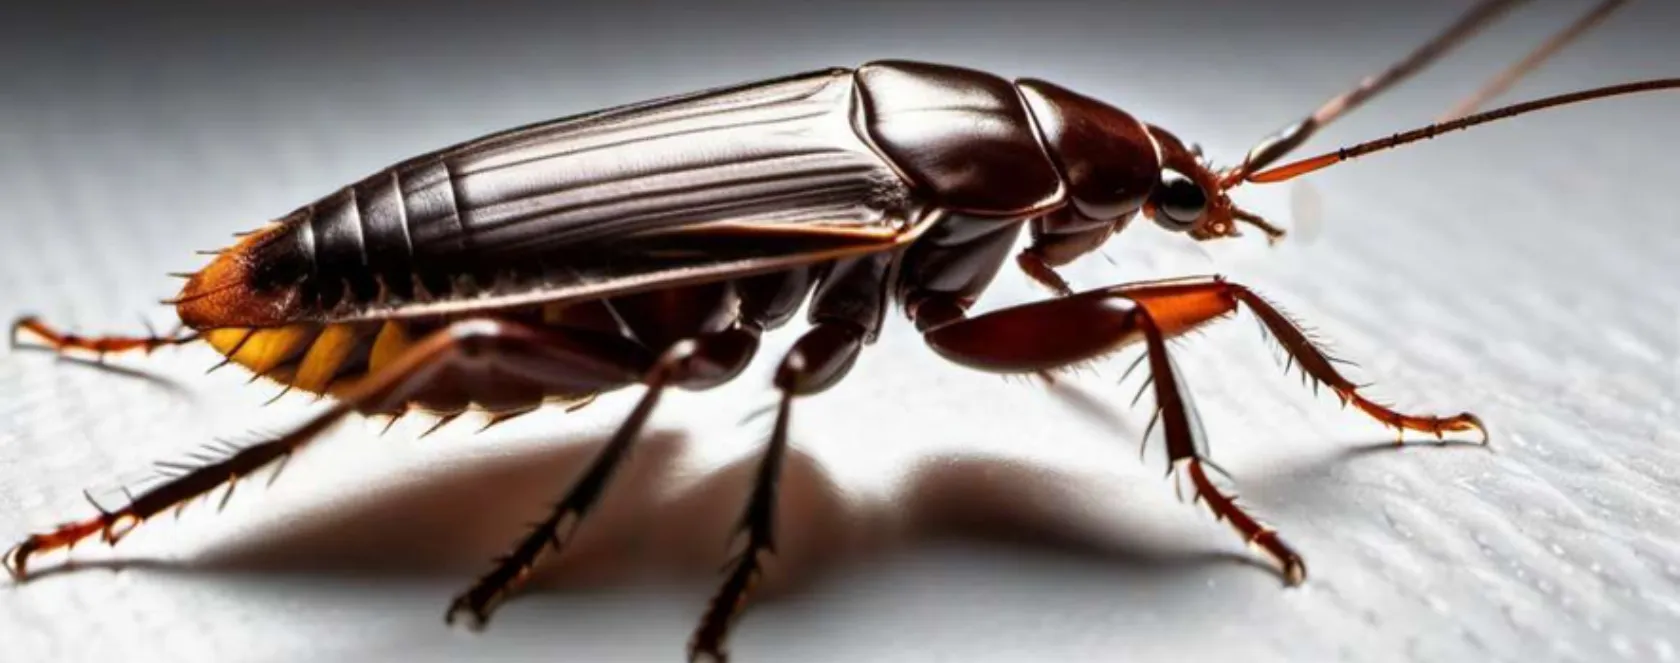 Cucarachas: Características, curiosidades y mitos sobre estos insectos